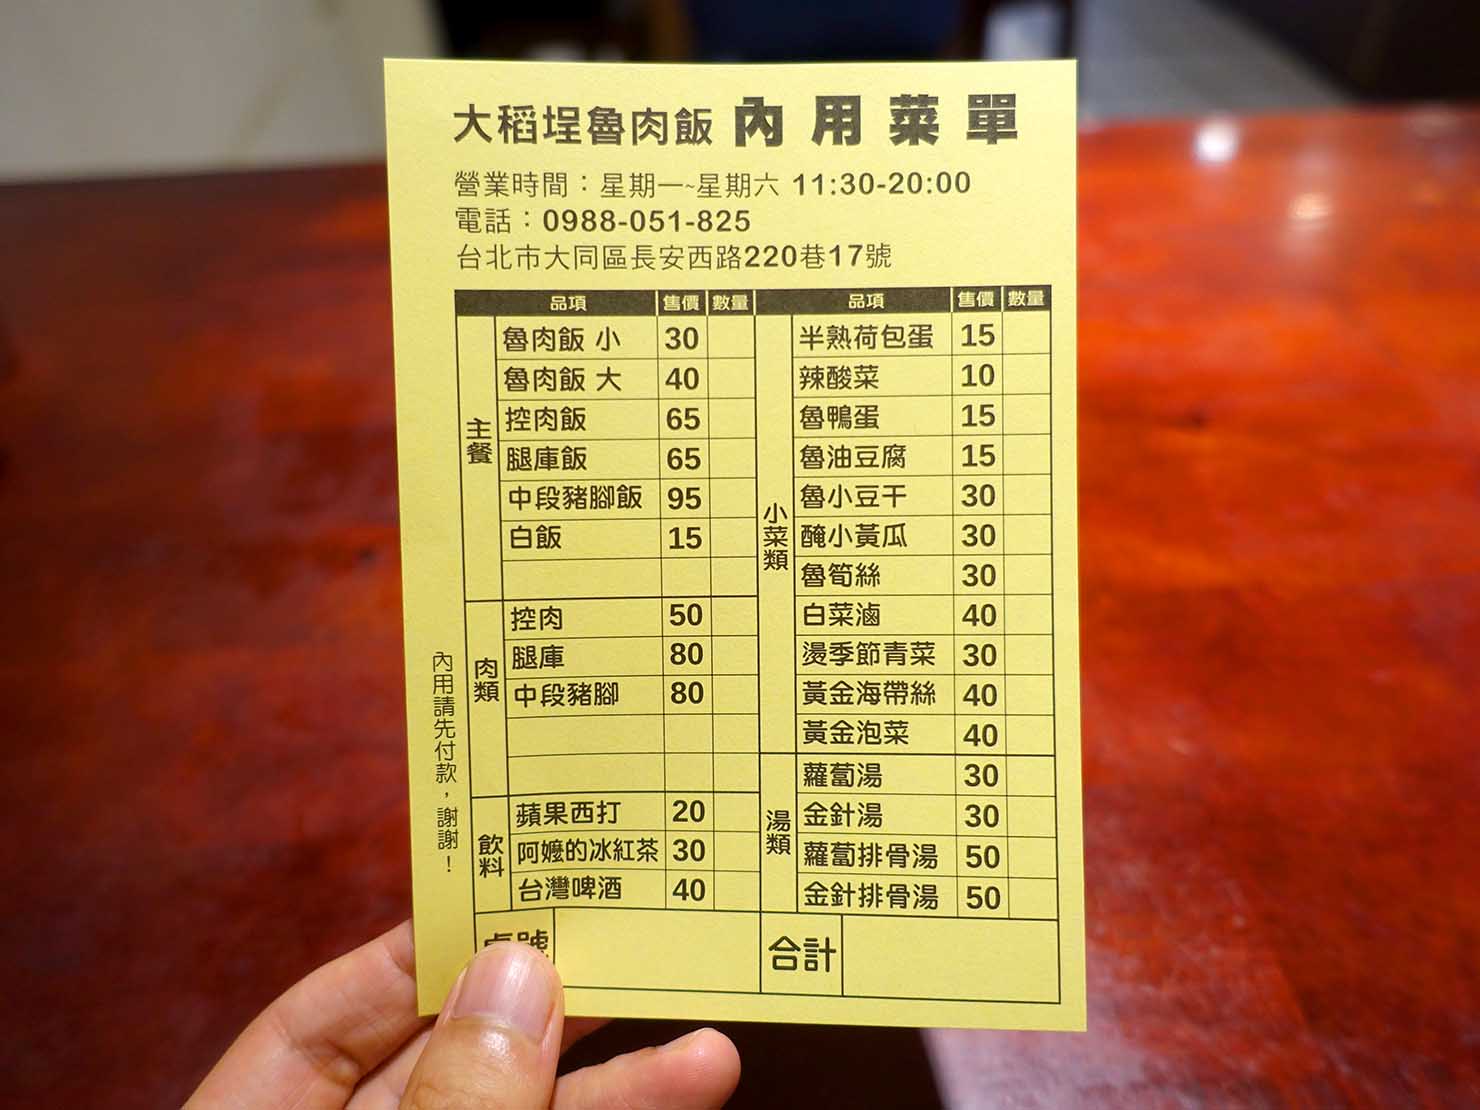 台北駅裏エリア（後站）のおすすめグルメ店「大稻埕魯肉飯」のオーダー表